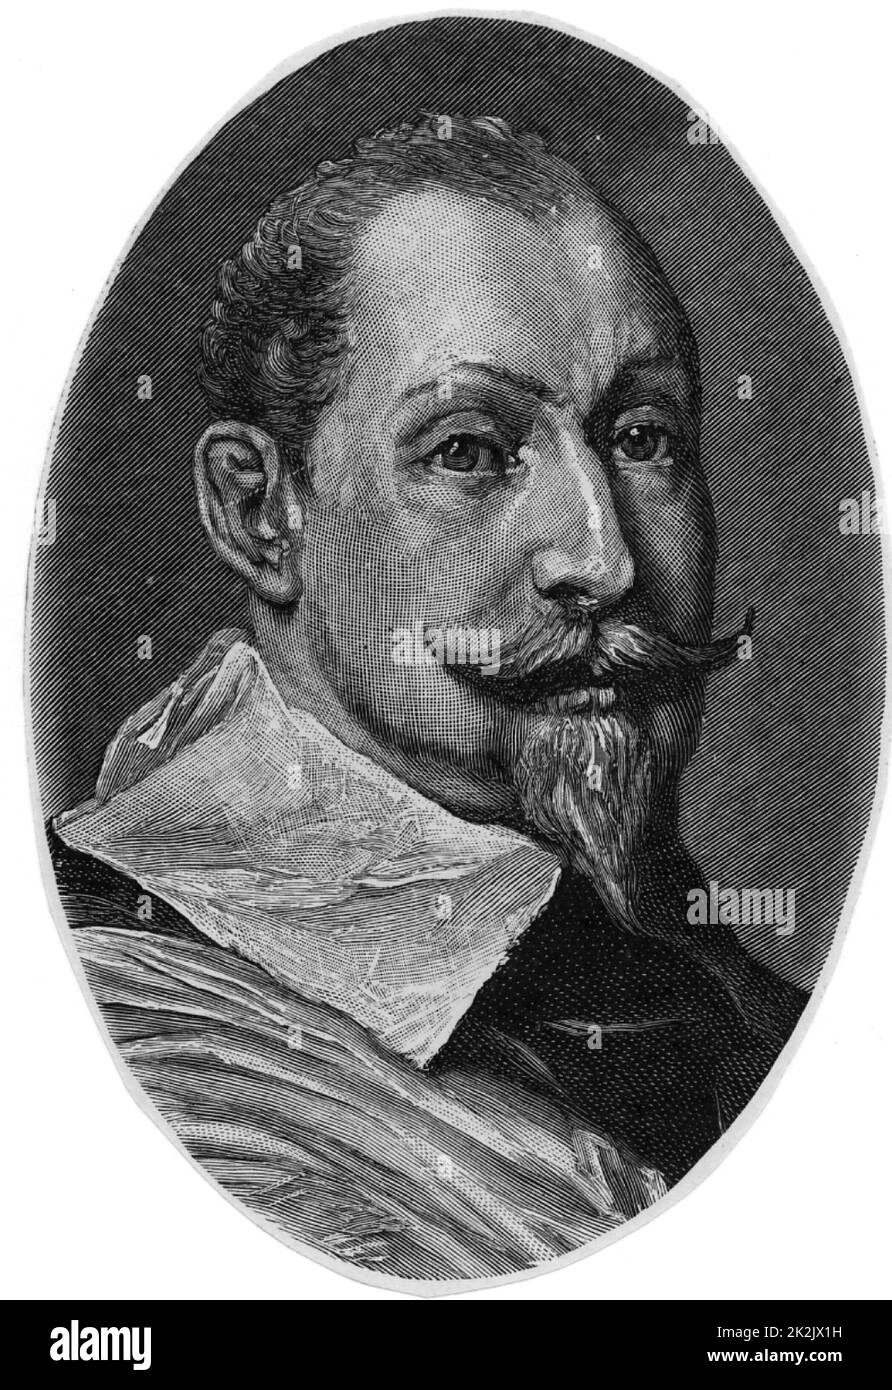 Gustavus Adolphus (1594-1632) König von Schweden von 1611. Im Dreißigjährigen Krieg (1618-1648) intervenierte im Namen der Protestanten gegen die katholische Liga. Tödlich verwundet in Lutzen. Gravur. Stockfoto